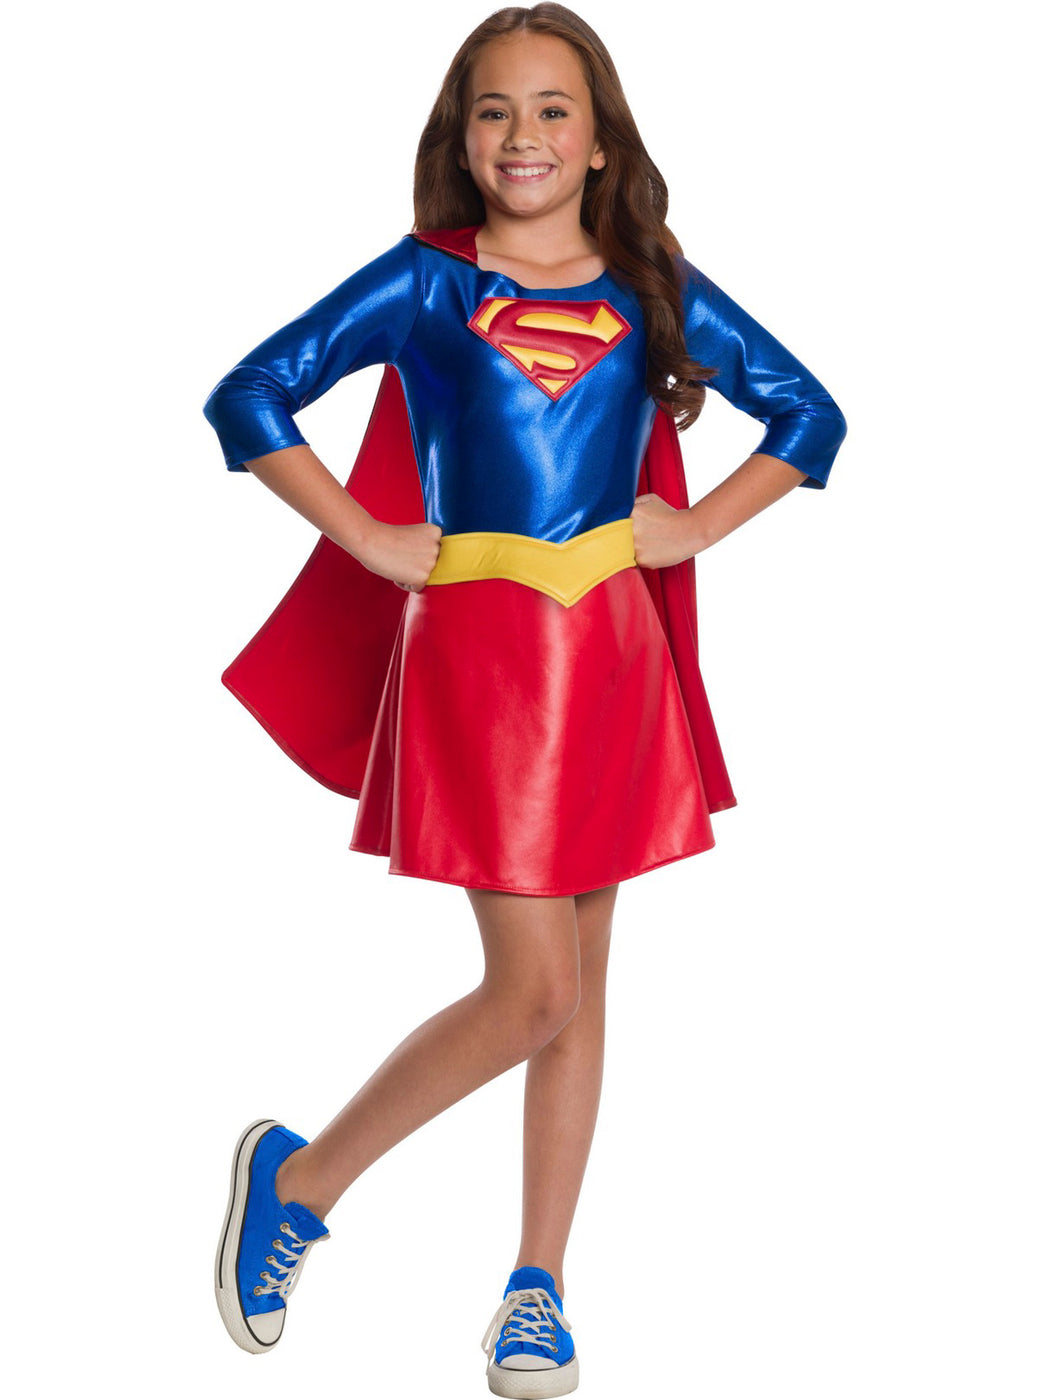 Deluxe Supergirl Superhero Girls Costume For Kids — Costume Super Center